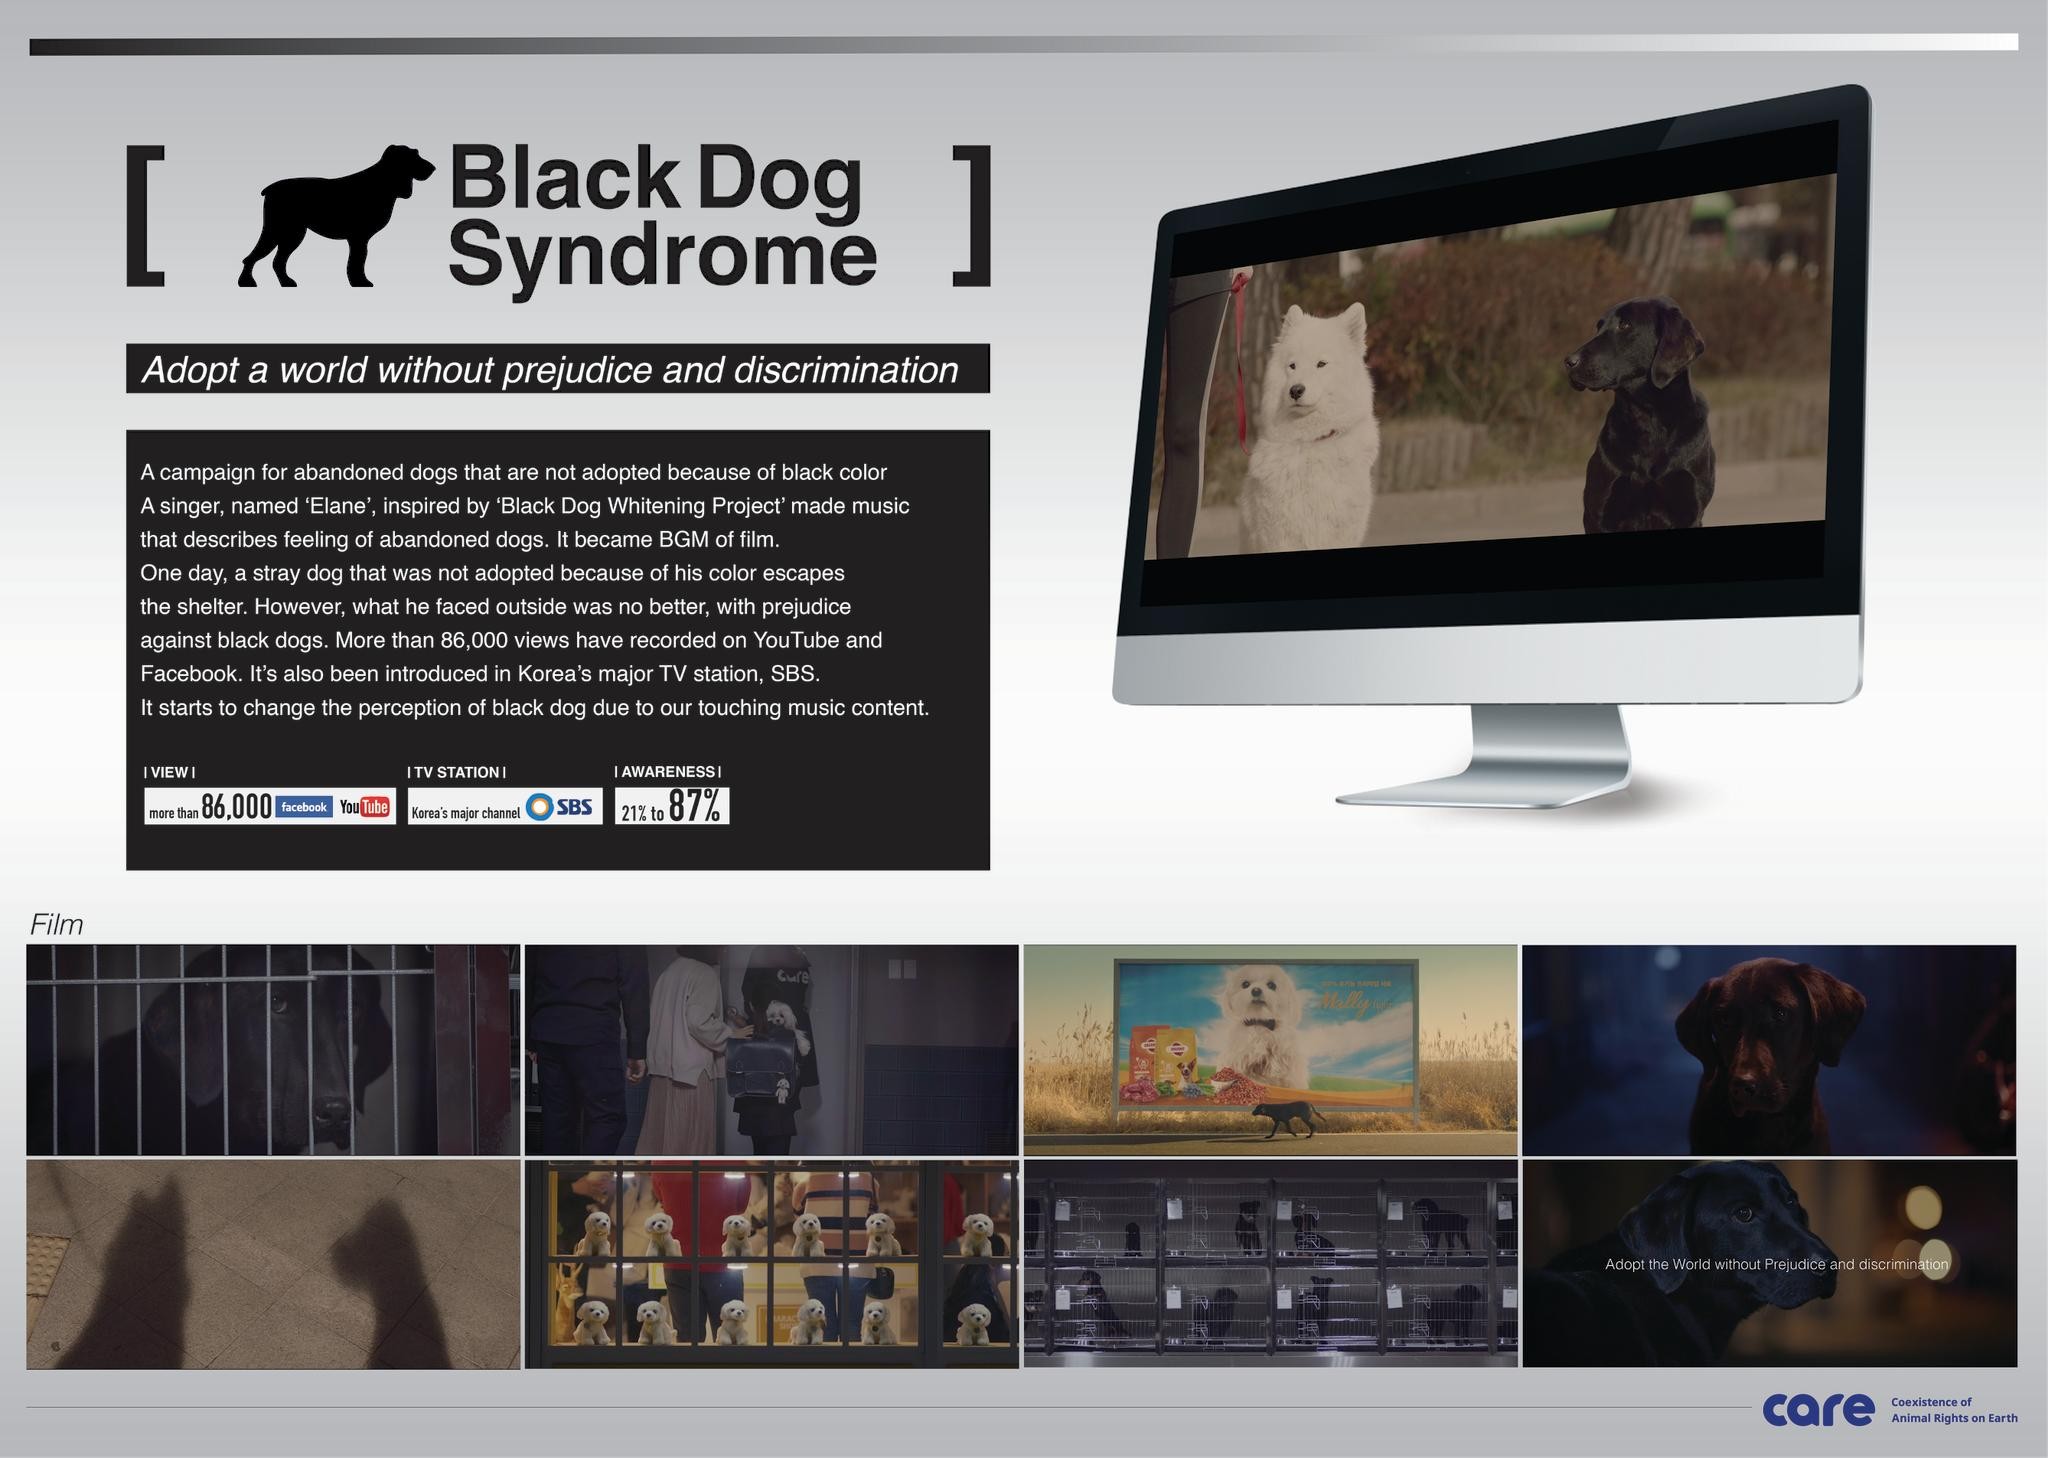 Black dog syndrome